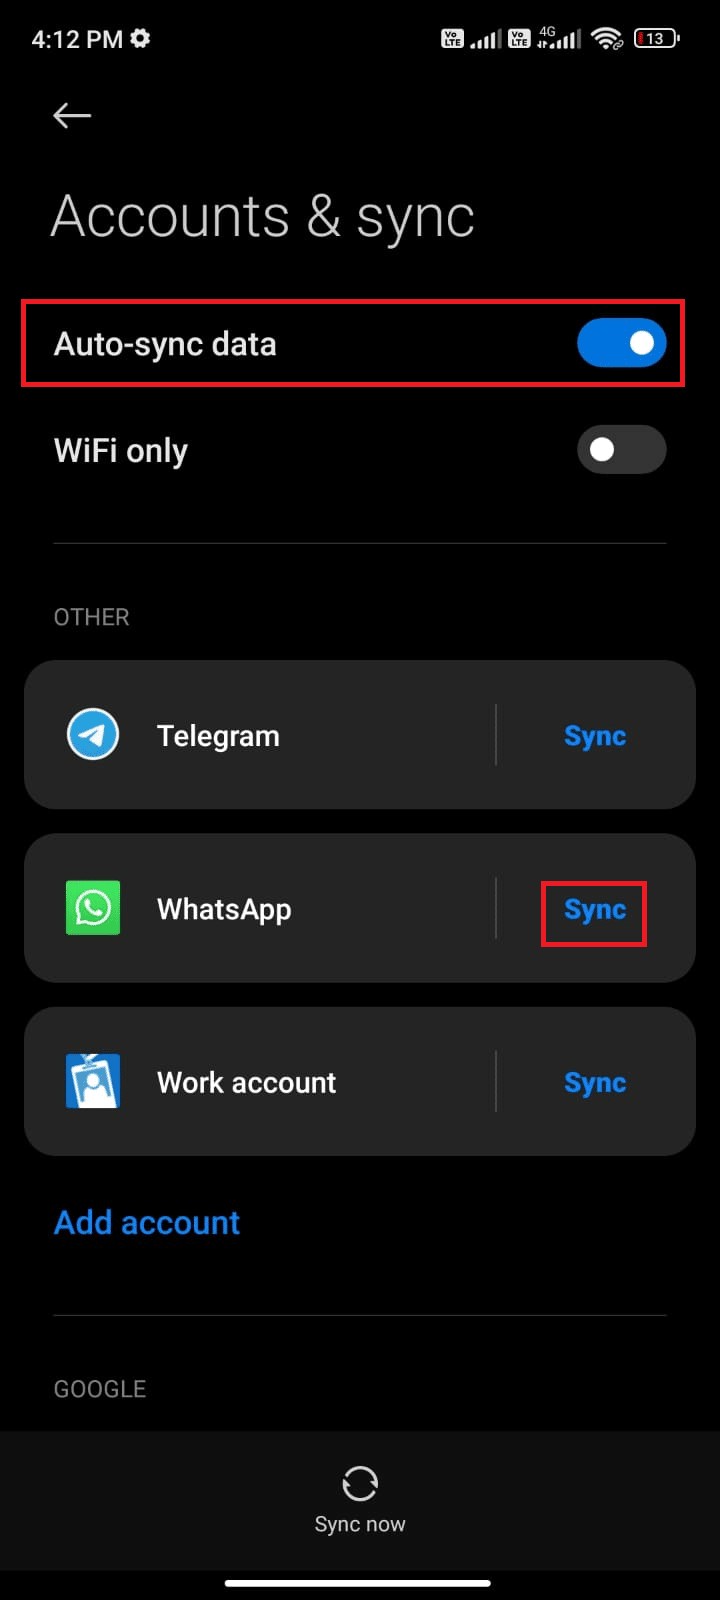 오늘 Android에서 WhatsApp이 작동하지 않는 문제 수정